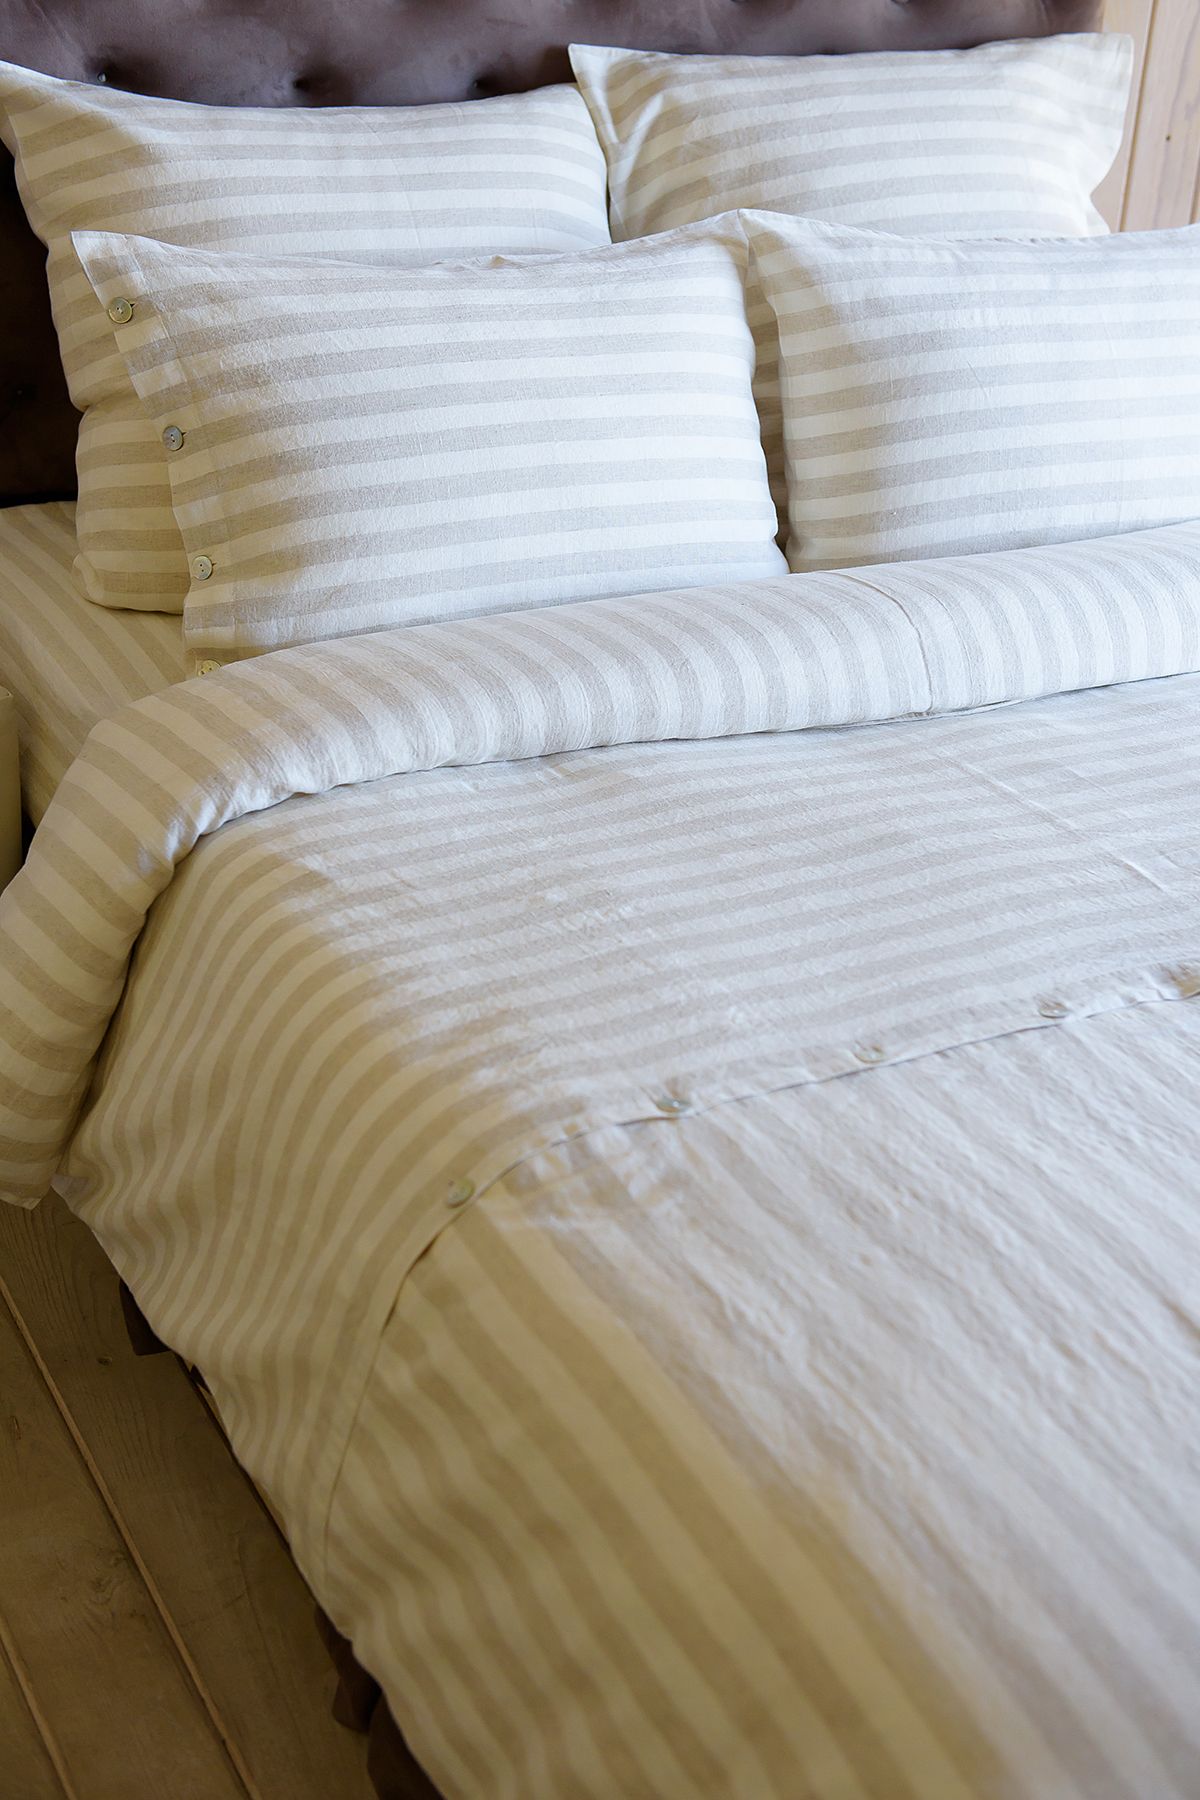 Льняное постельное белье: КПБ Стиль в составе 55% лен 45% хлопок, цена от25500 руб. в интернет-магазине LinoRusso